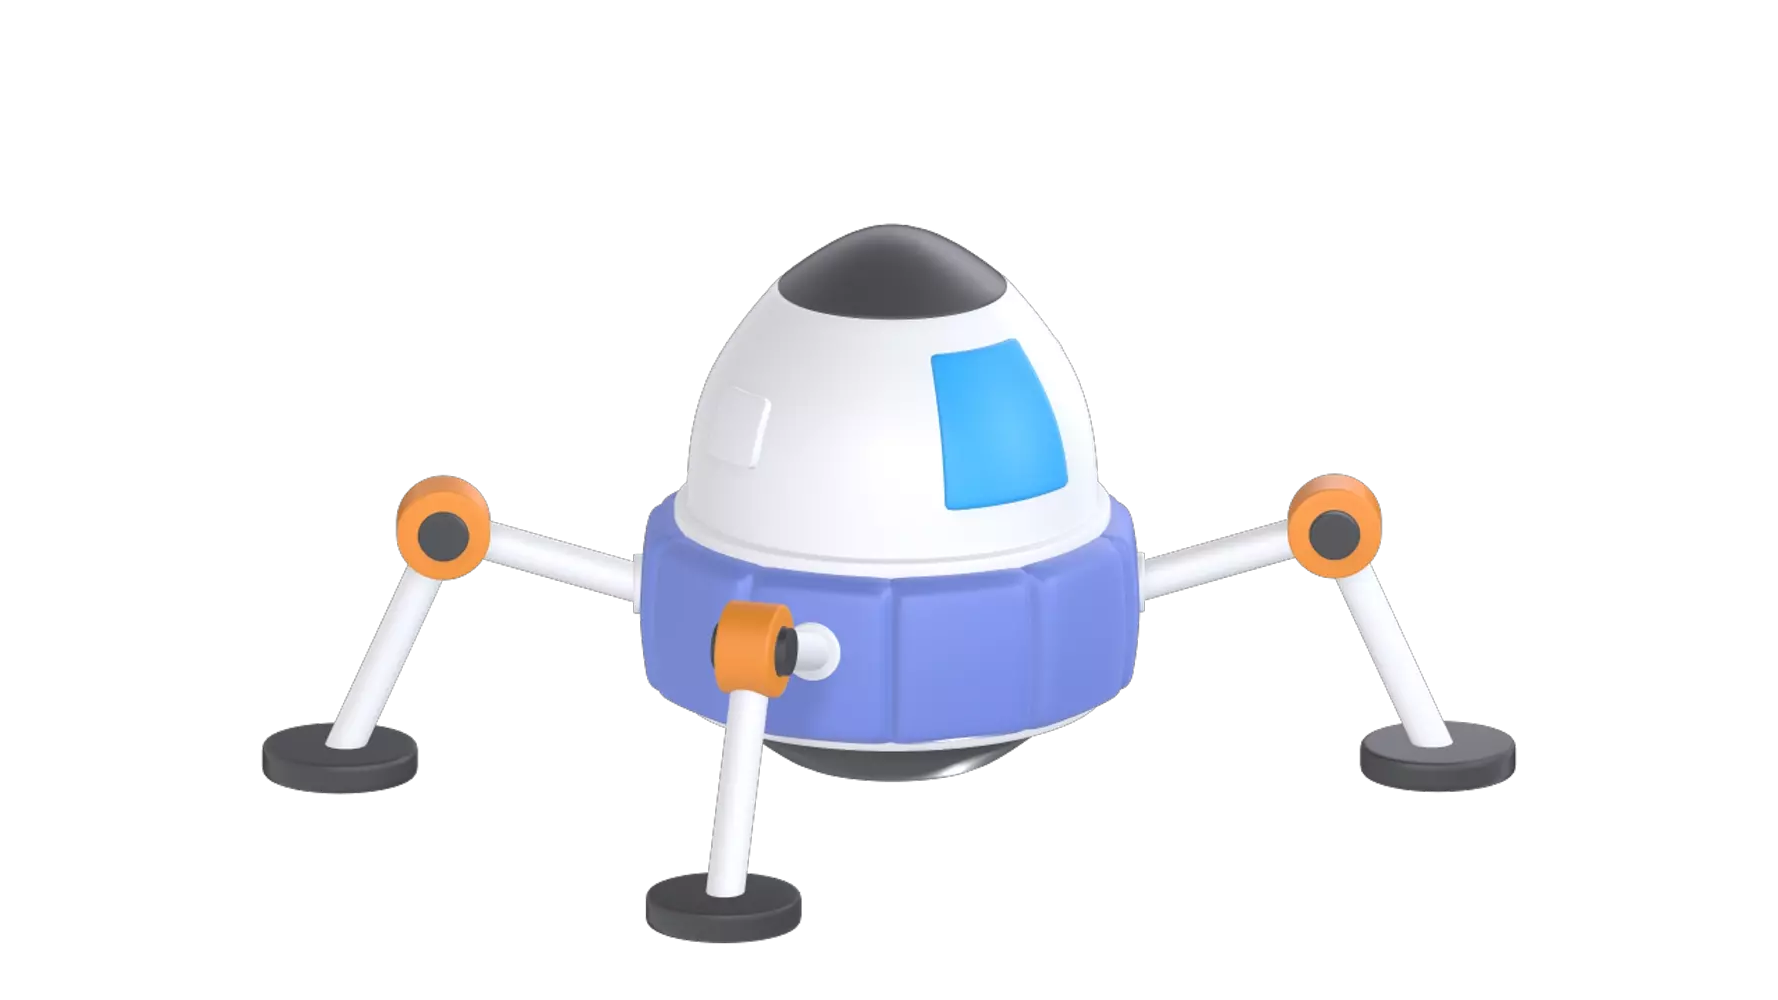 Space Robot 3d model--0124085a-4f40-403c-8f94-d0af33dae038